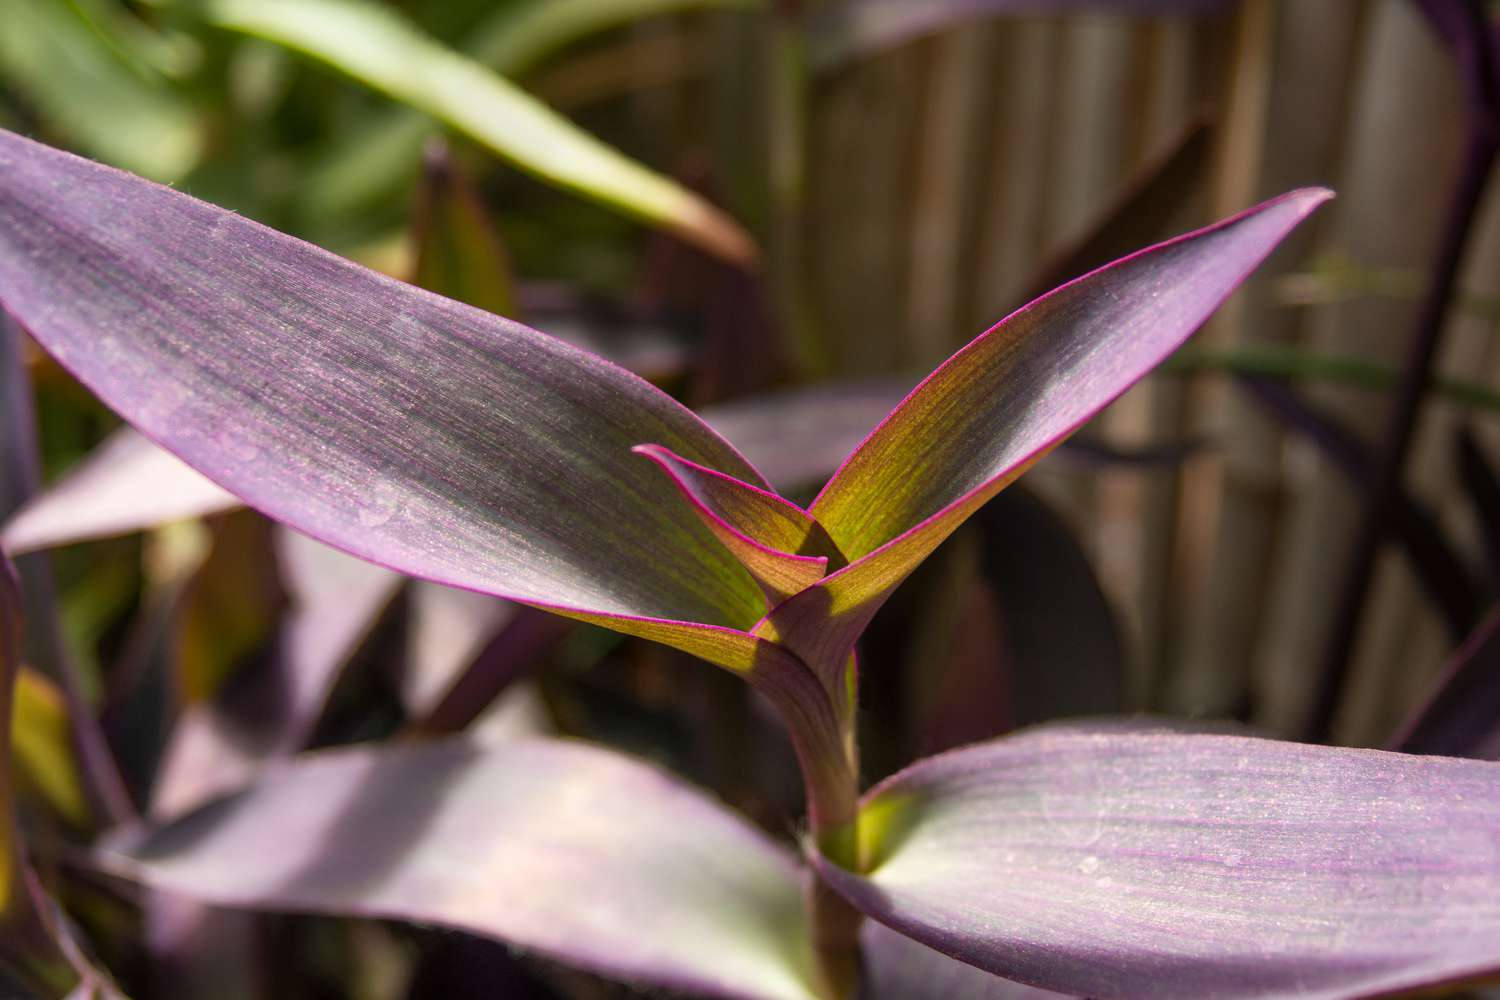 Lila Herzpflanze mit königspurpurnen Blättern und neuem Wachstum in Nahaufnahme